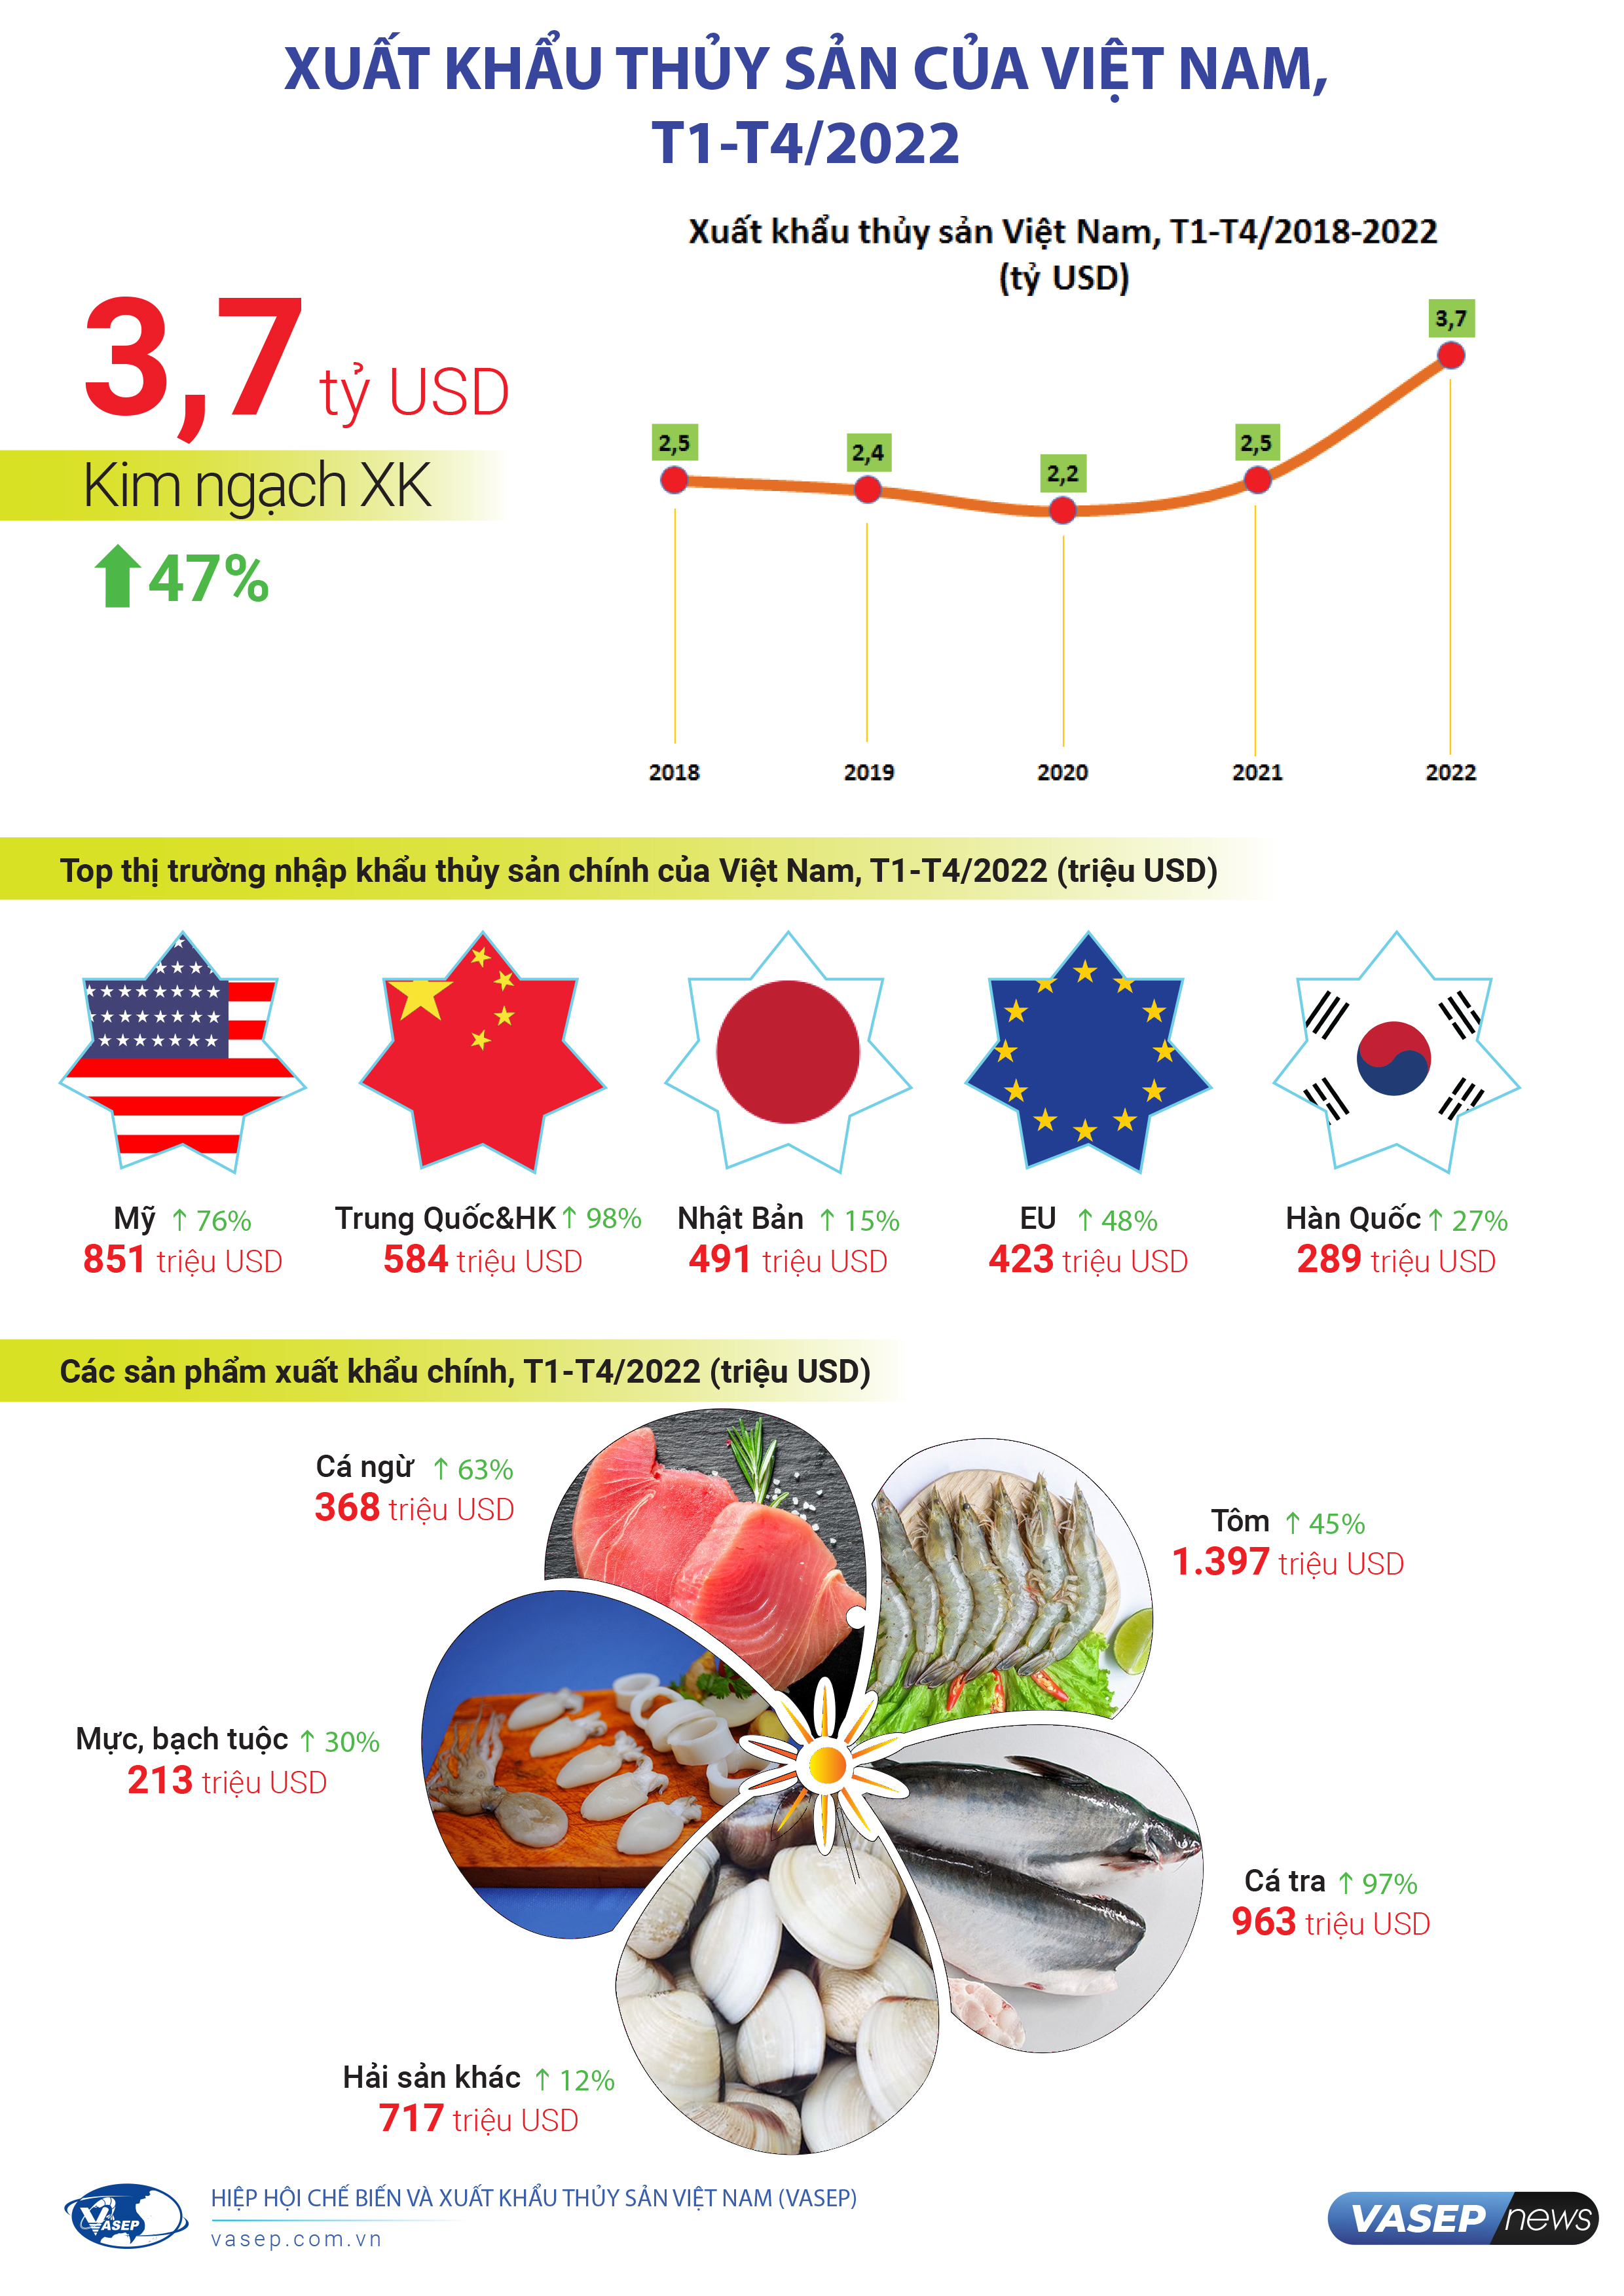 Infographic Xuất khẩu thủy sản Việt Nam 4 tháng đầu năm 2022 